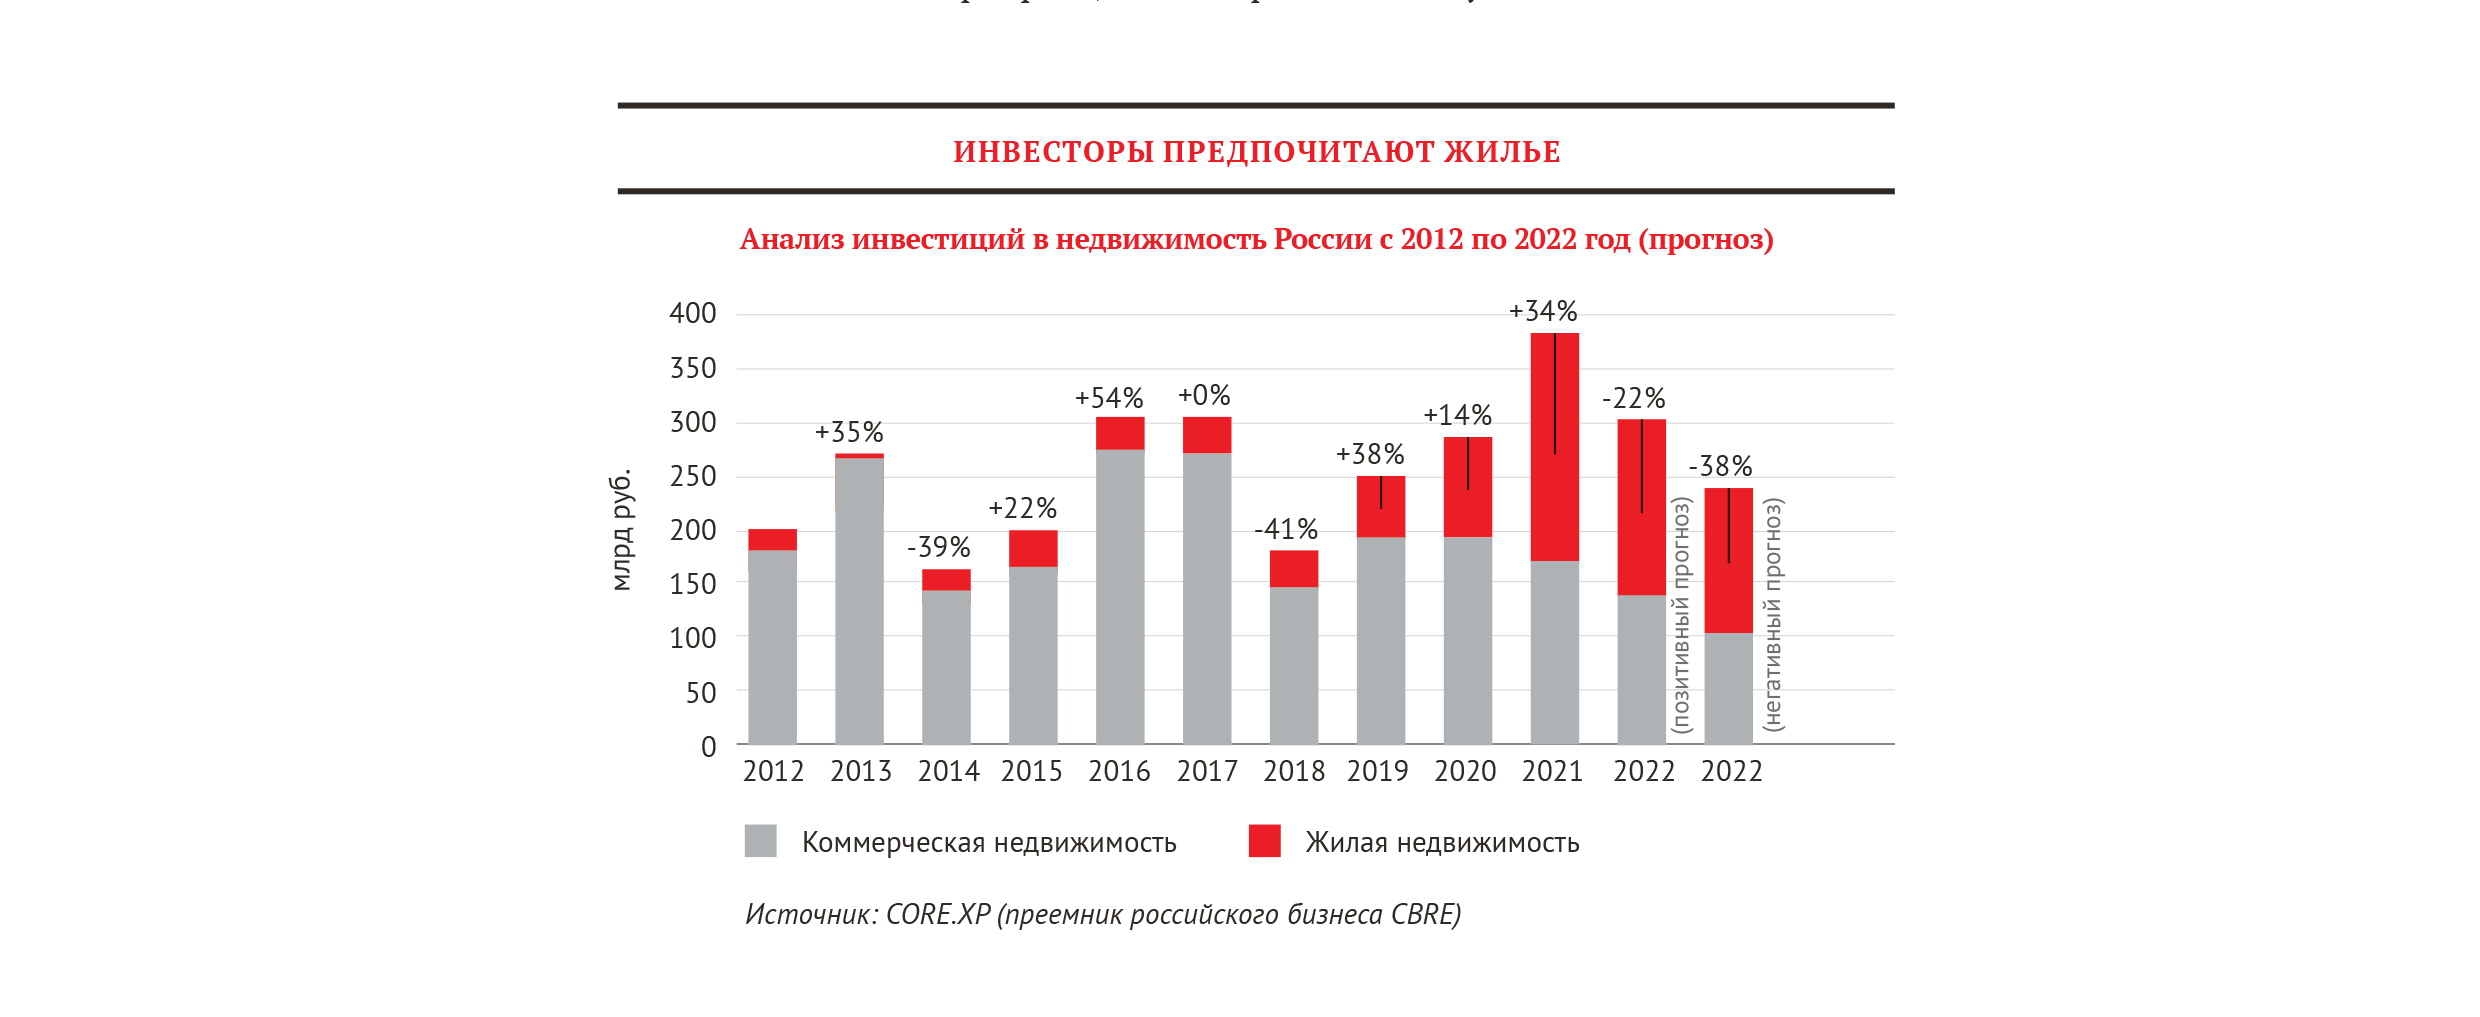 Анализ инвестиций в недвижимость России с 2012 по 2022 год (прогноз)